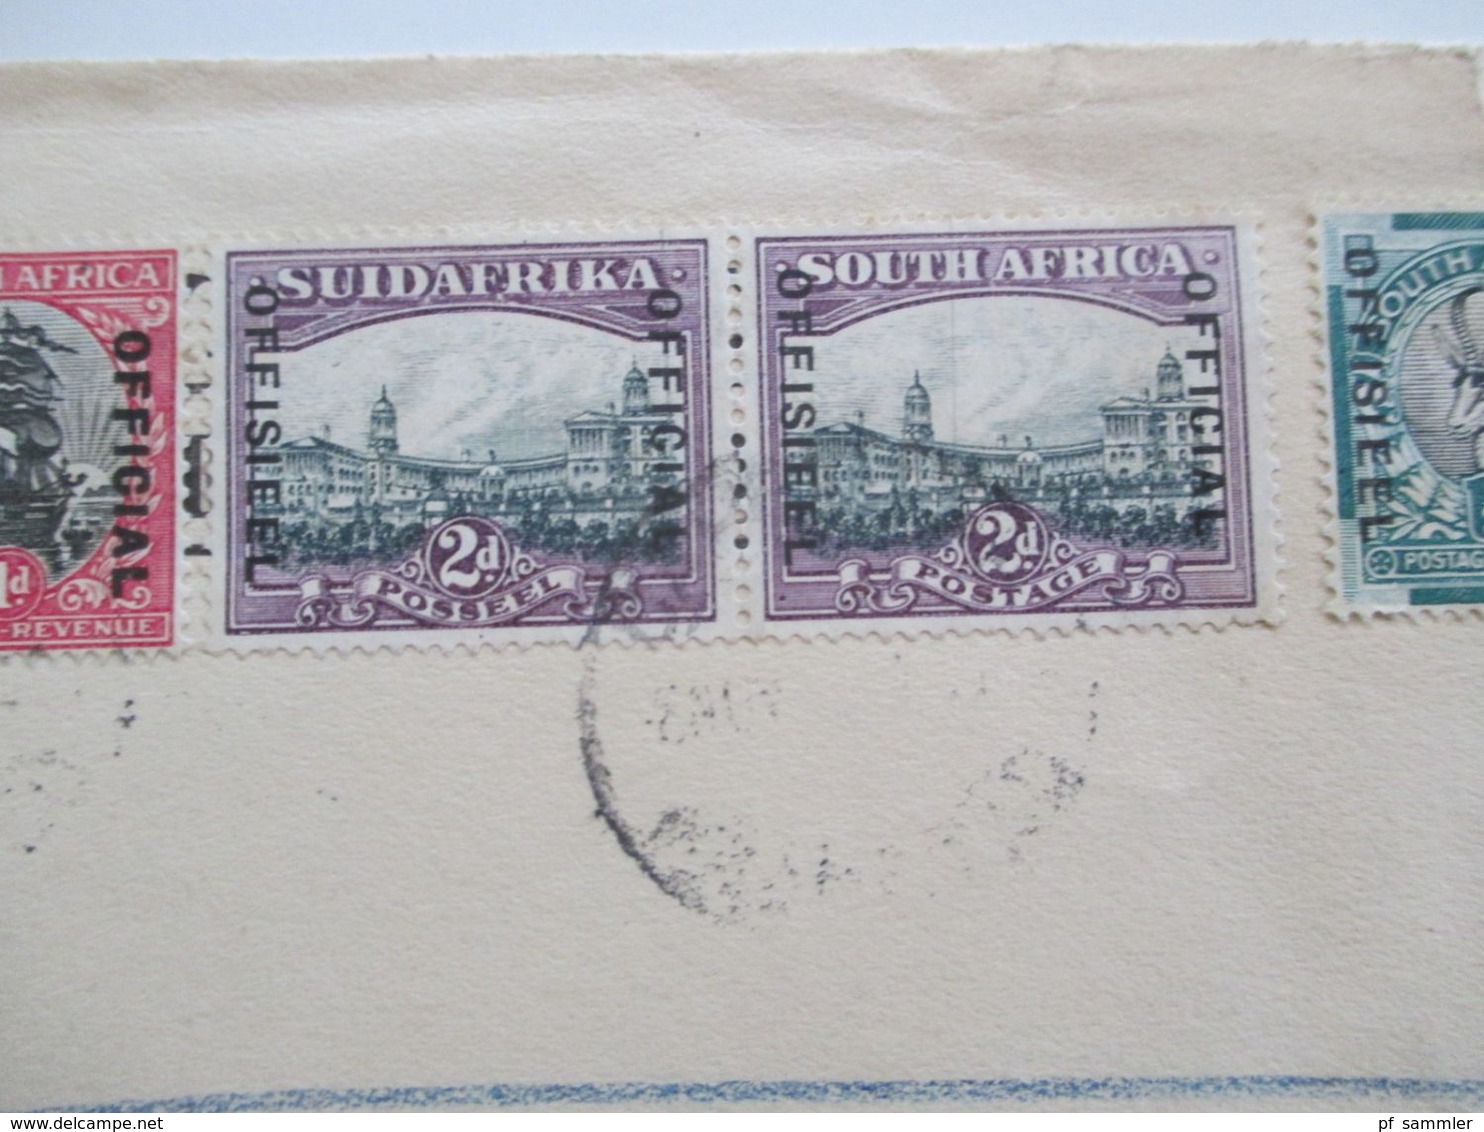 Südafrika 1932 Einschreiben Registered Letter Capetown - Pretoria Marken Mit Aufdruck Official / Offisieel - Covers & Documents